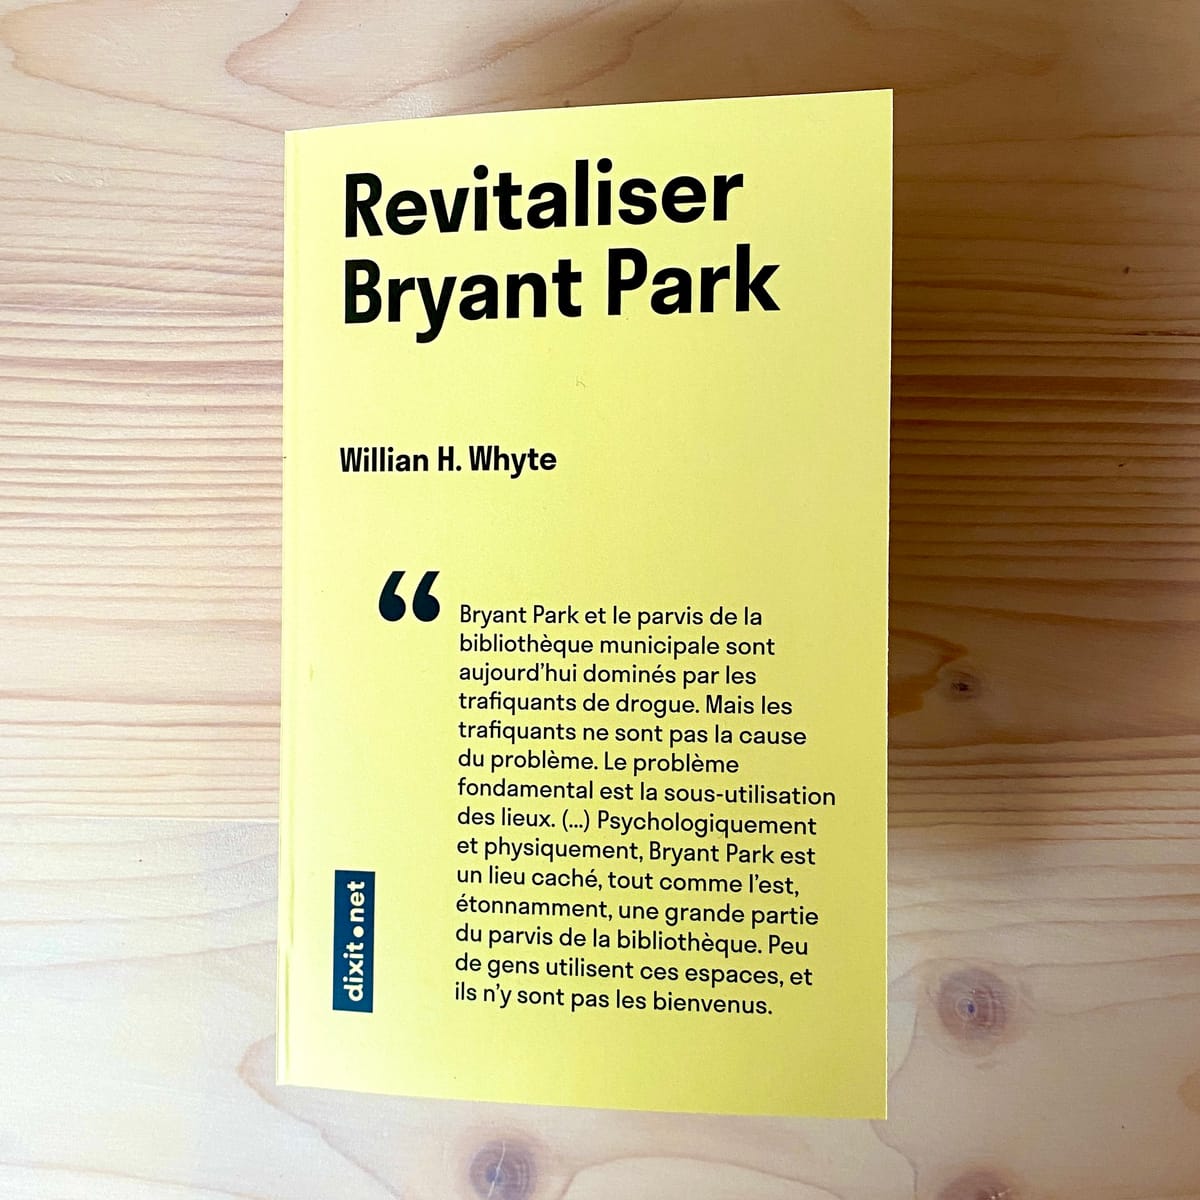 #4 Revitaliser Bryant Park, par Willian H. Whyte